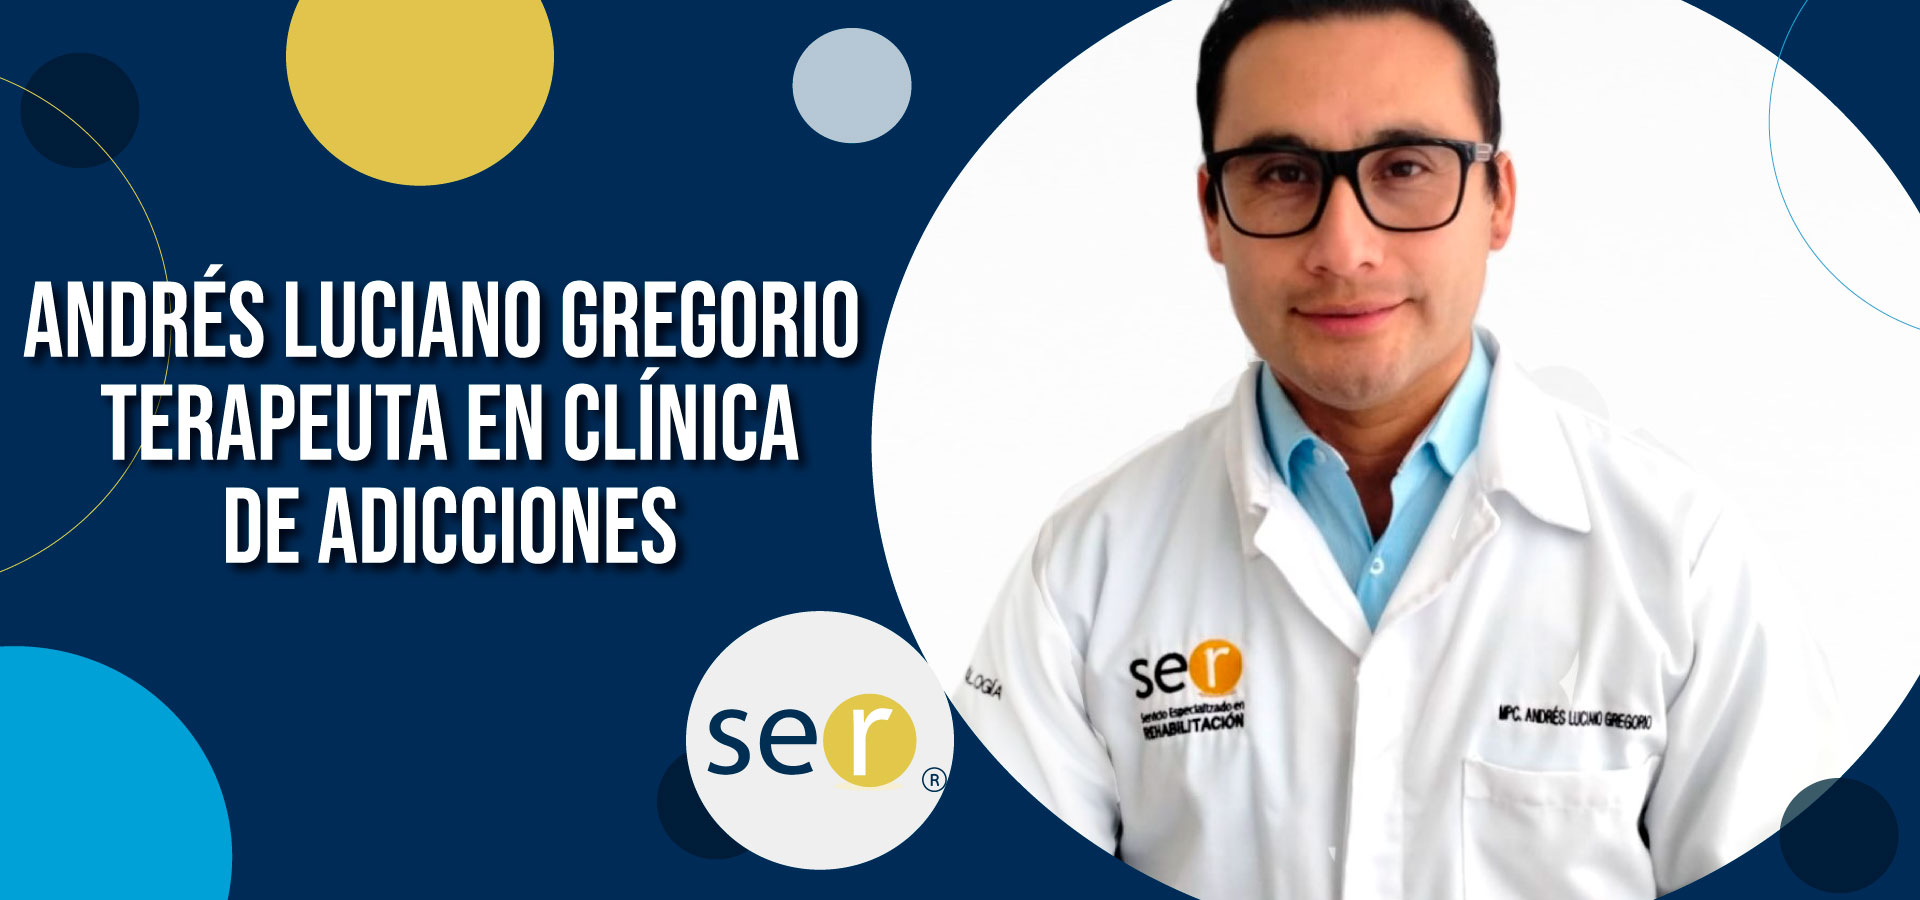 Clinica ser banner Andres Luciano Gregorio Terapeuta en clinica de adicciones - Clínica-SER